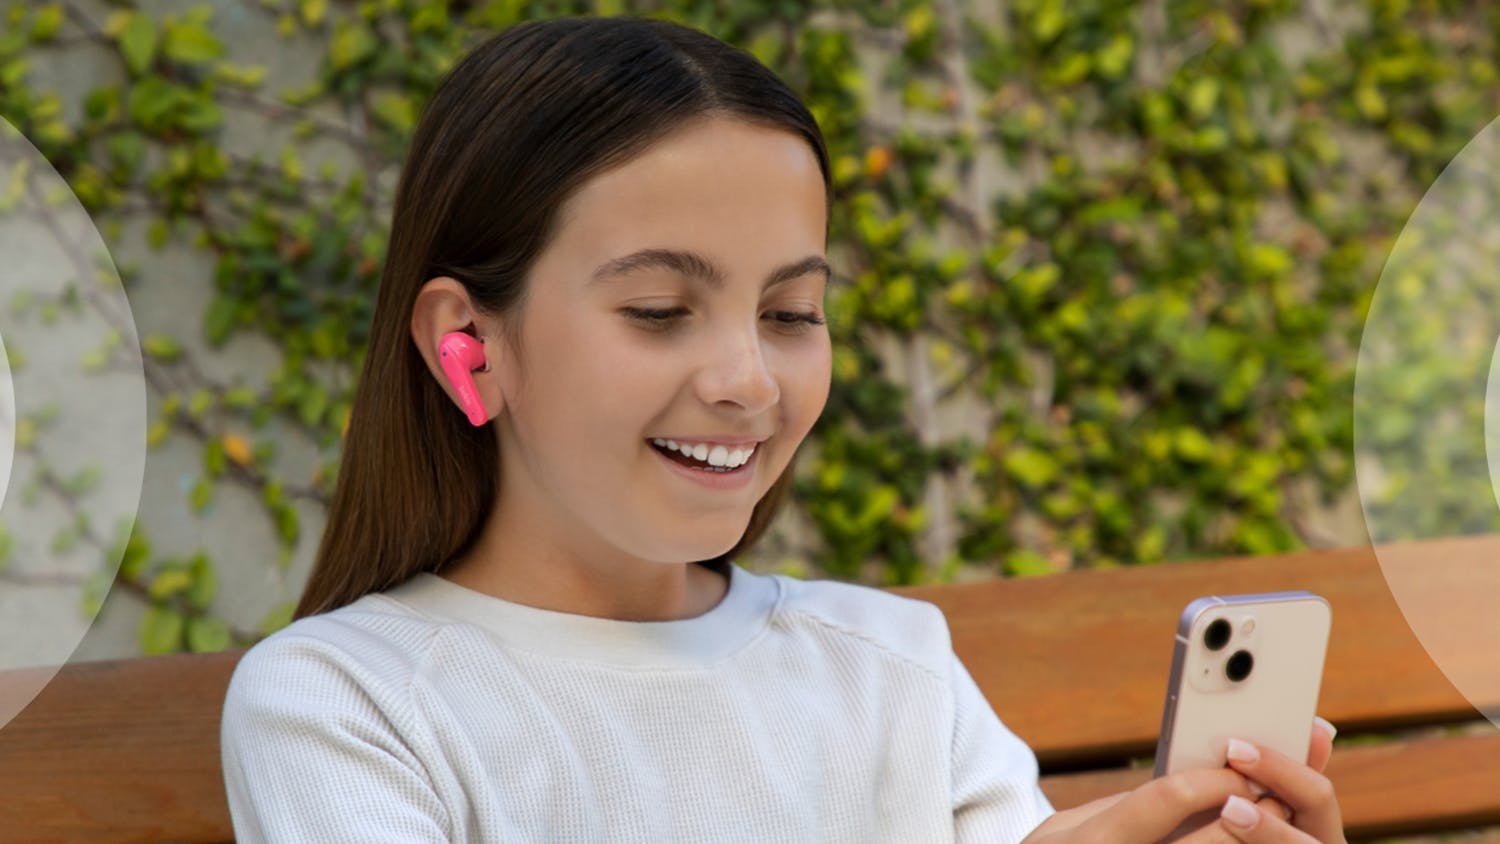 Belkin SOUNDFORM Nano Kids True Wireless In-Ear Headphones - Pink